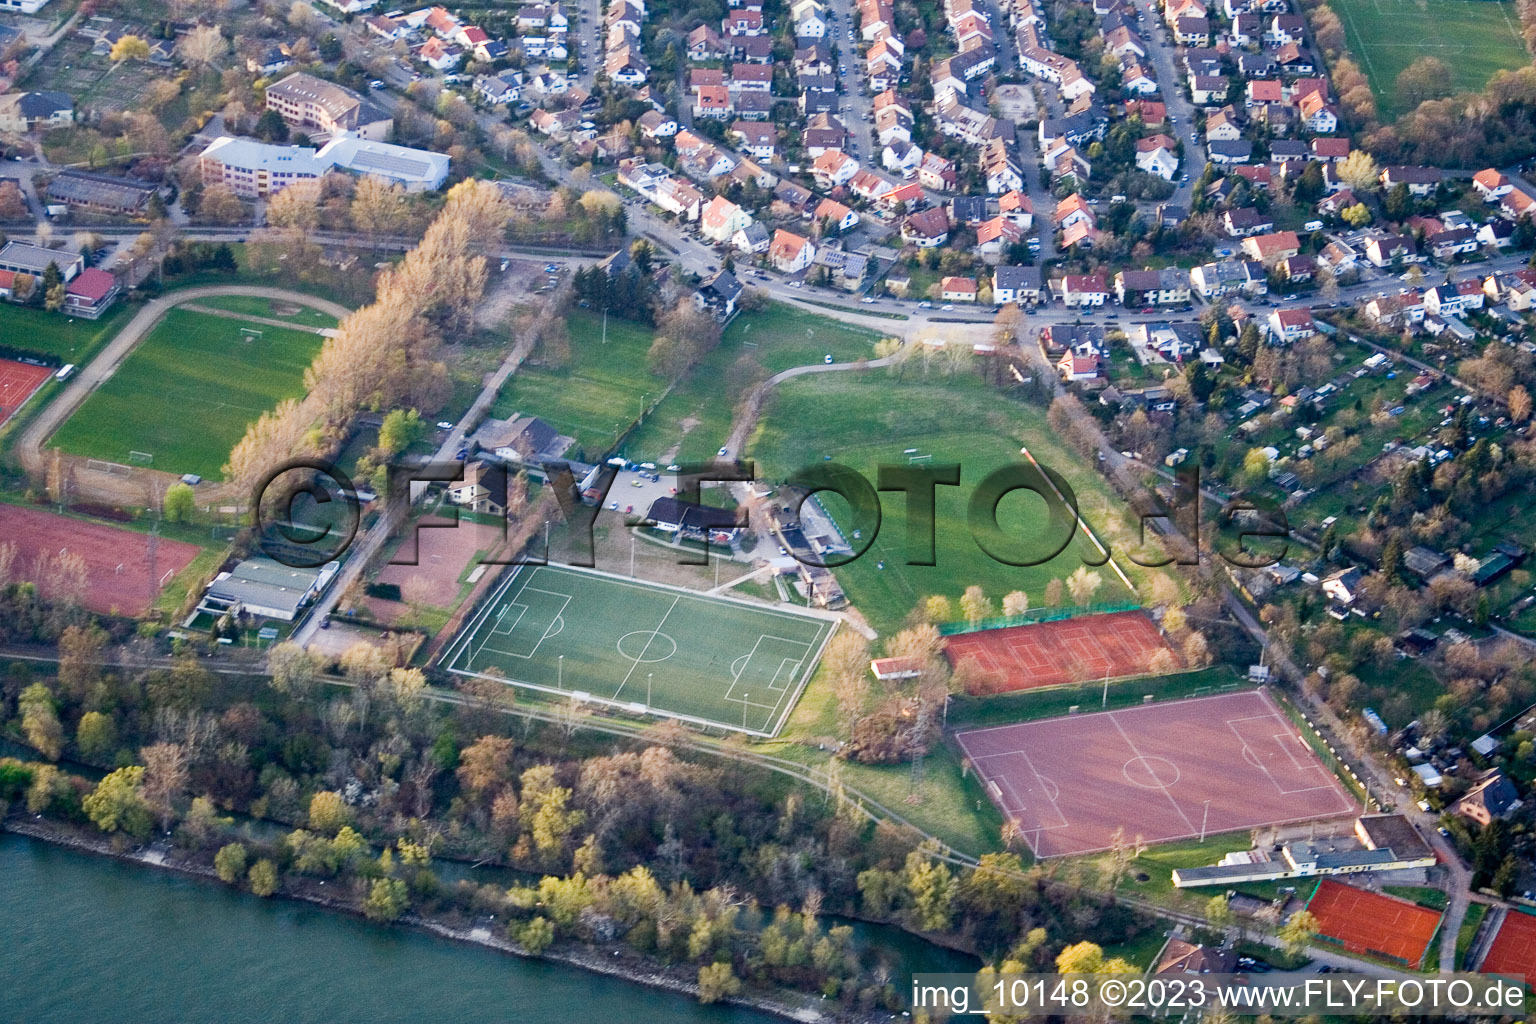 Vue aérienne de Installations sportives VfL Kurpfalz à le quartier Neckarau in Mannheim dans le département Bade-Wurtemberg, Allemagne